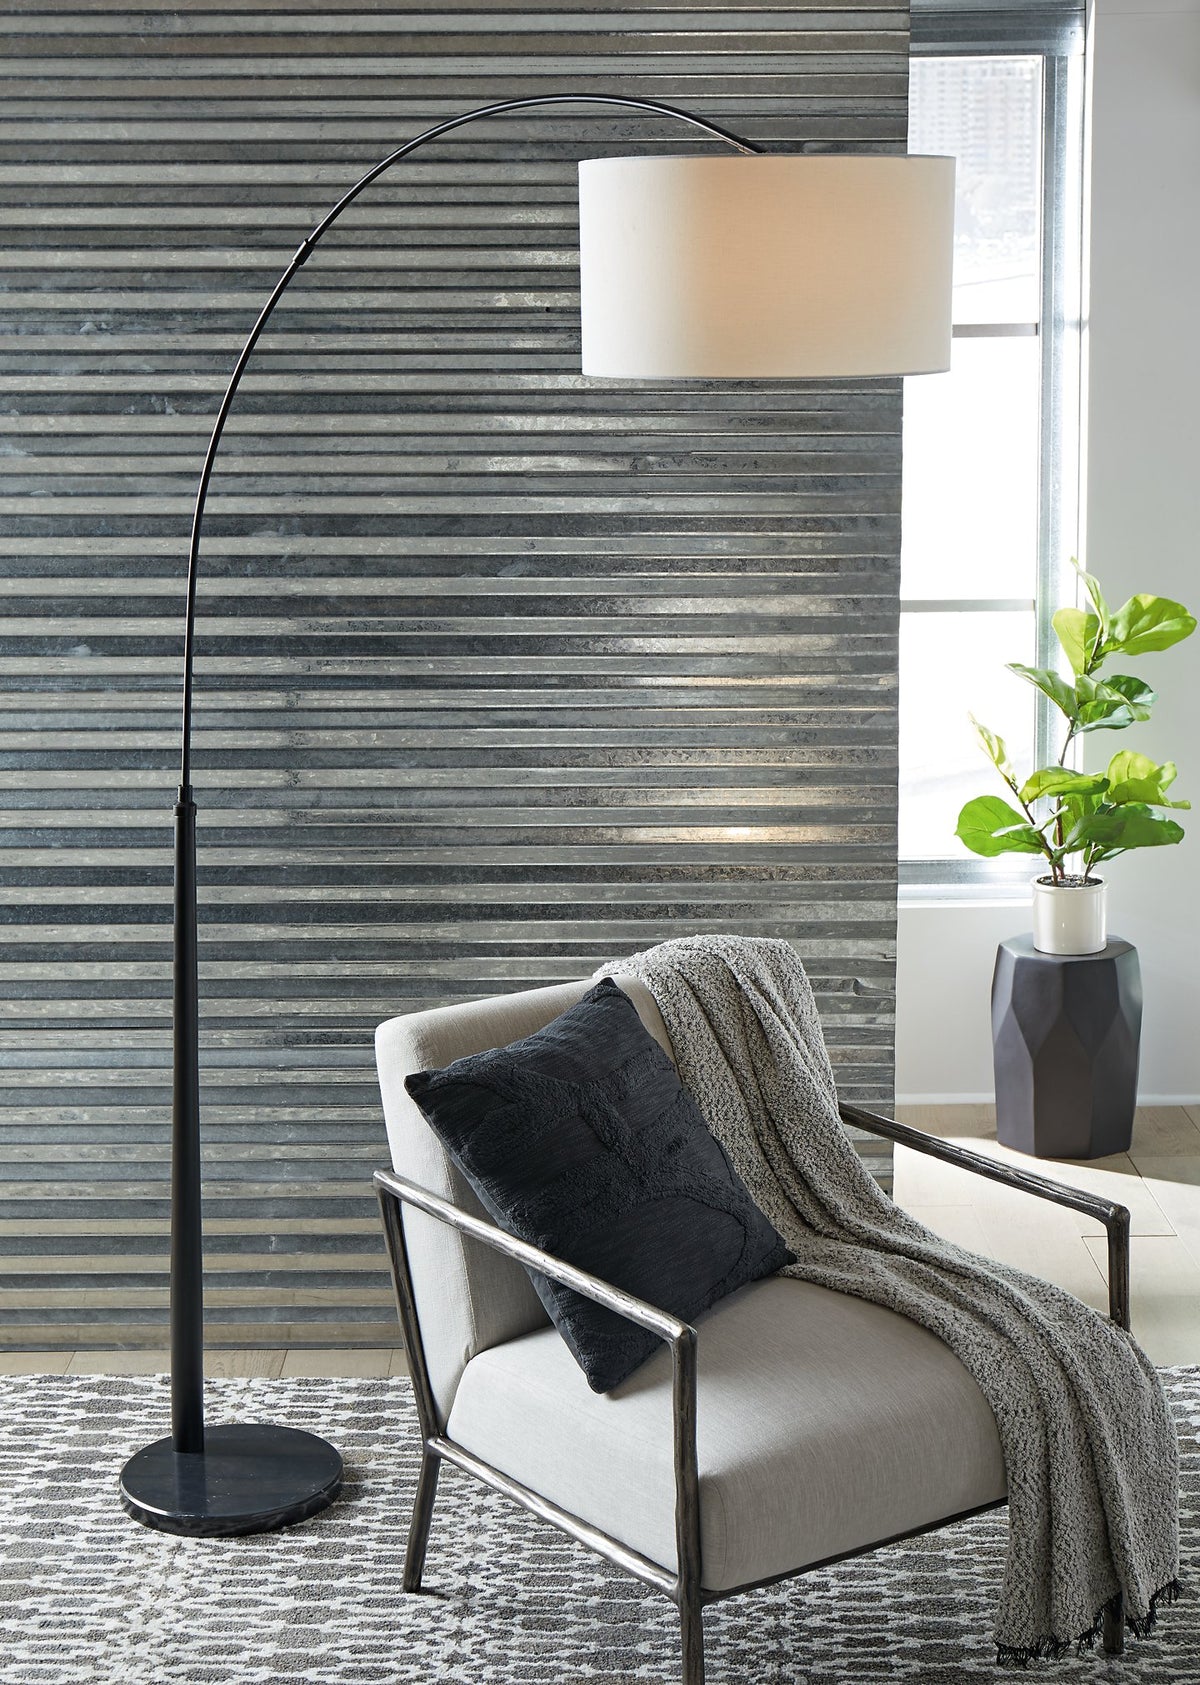 Veergate Arc Lamp - Half Price Furniture